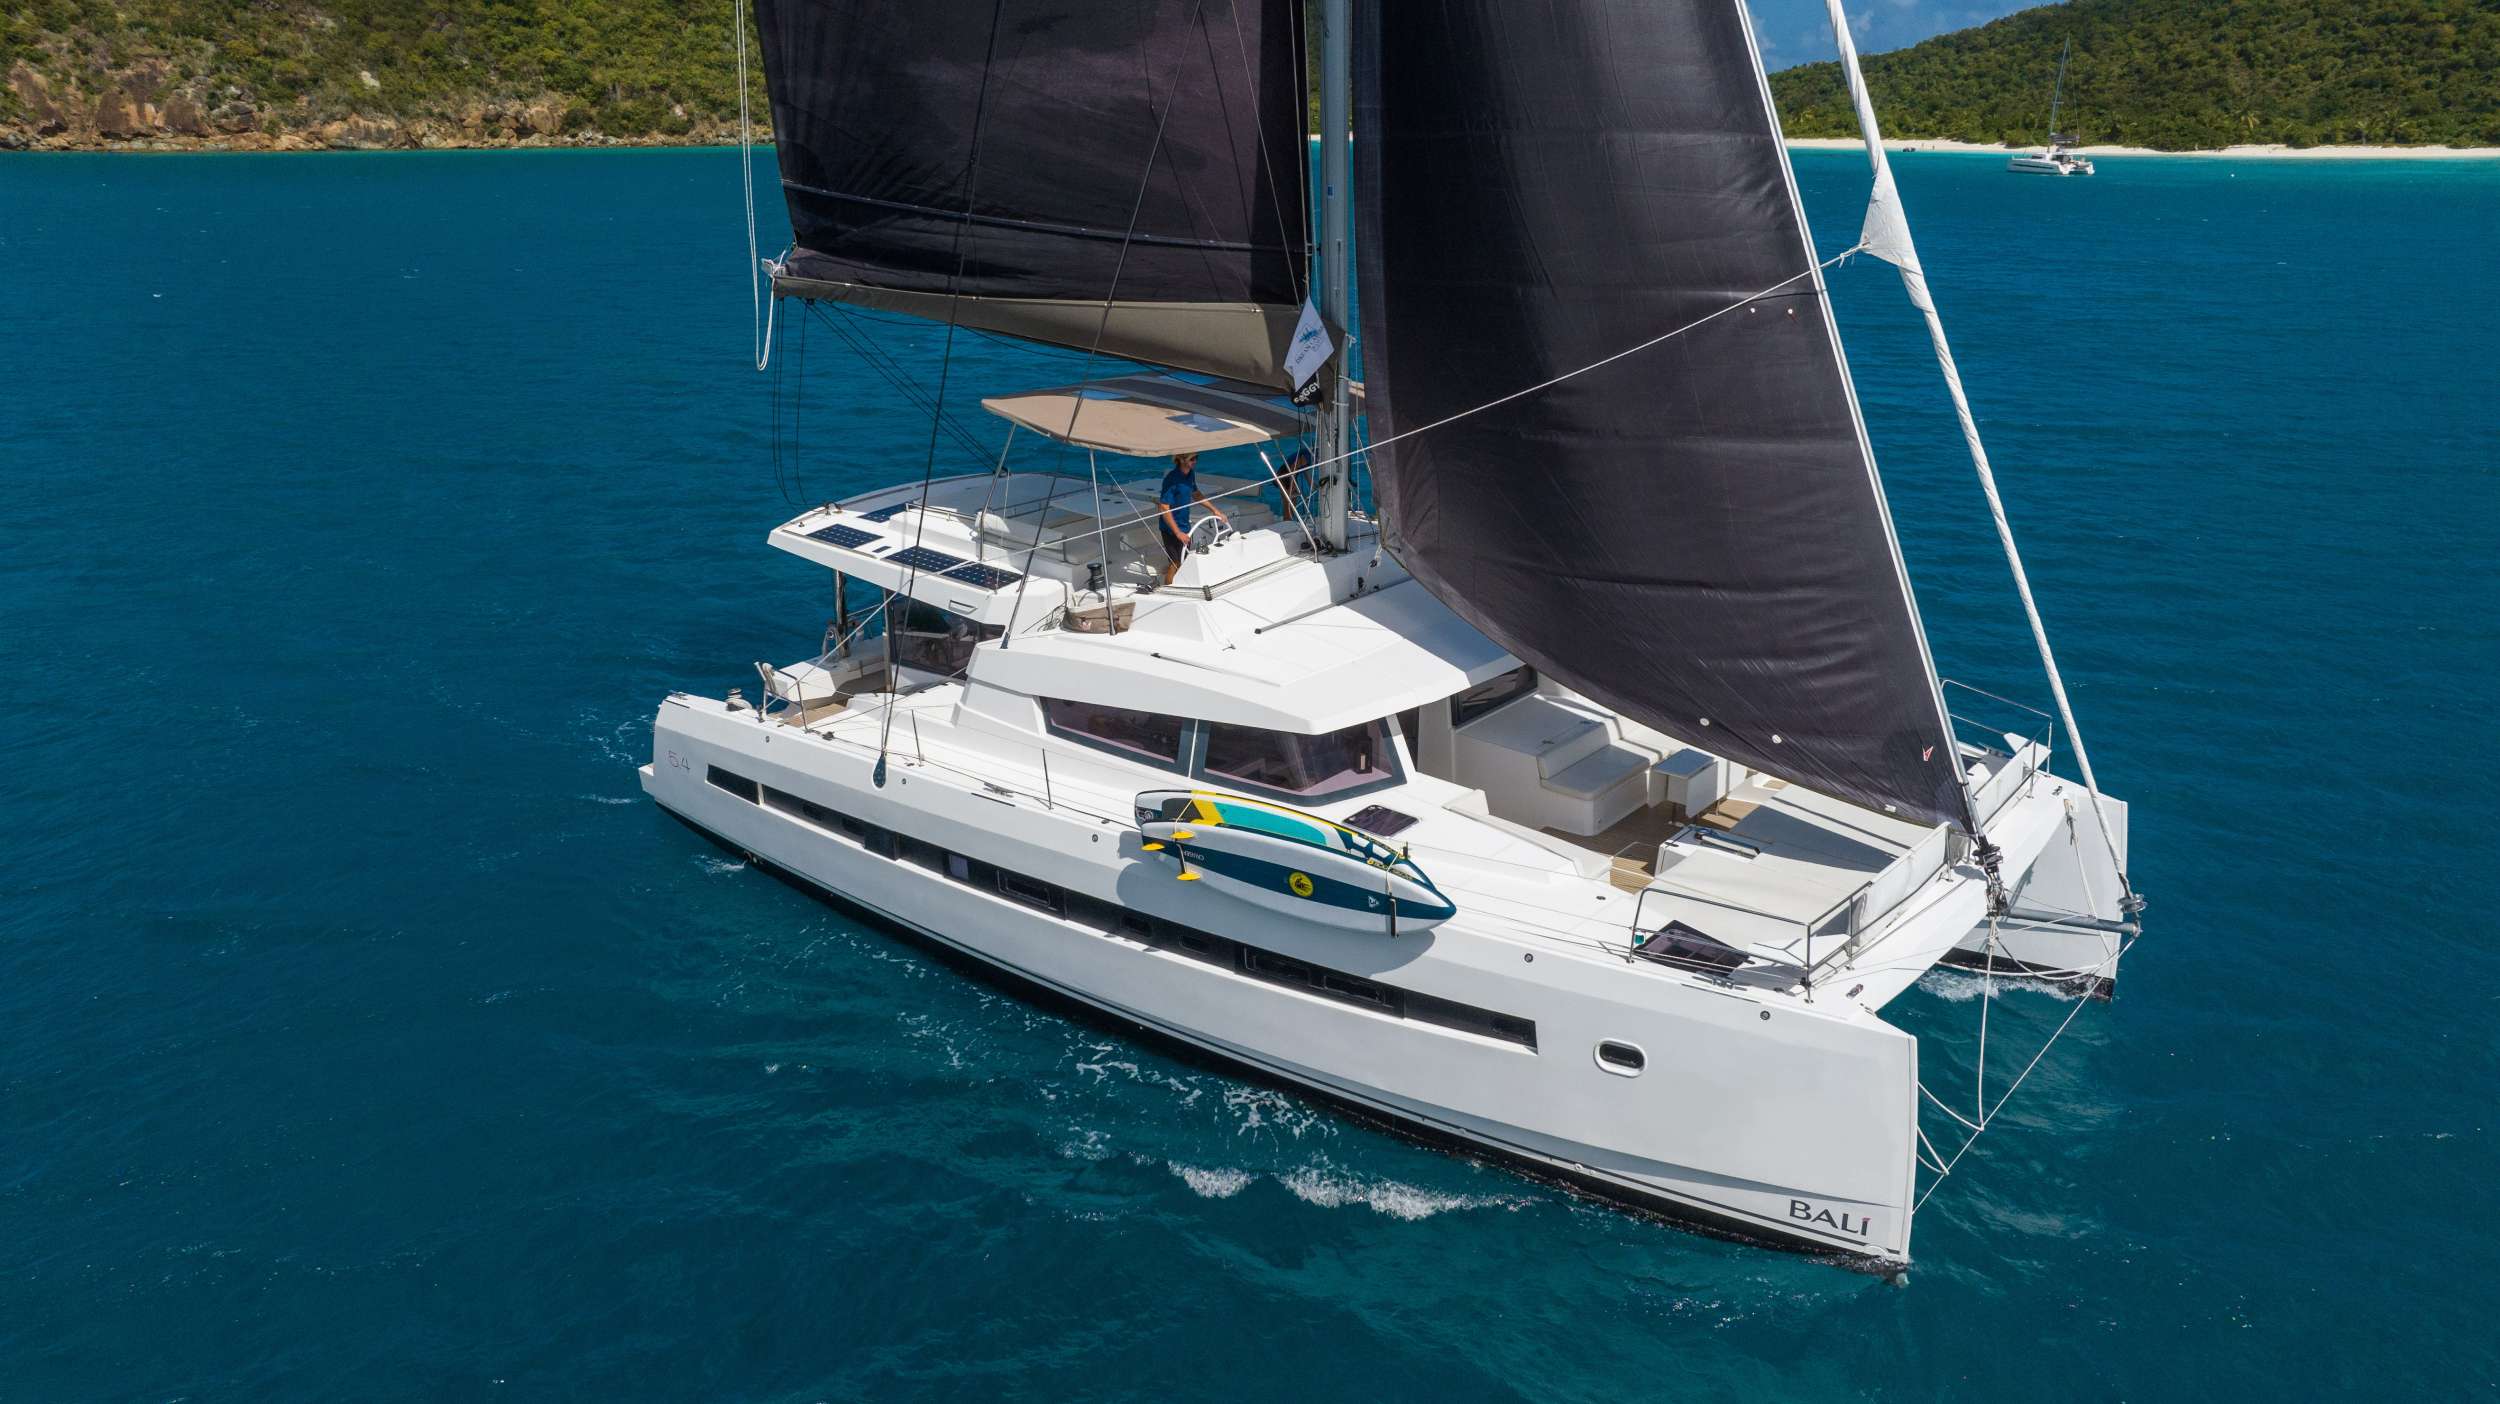 SUN DAZE 5.4 - Yacht Charter Saint Lucia & Boat hire in Caribbean 1